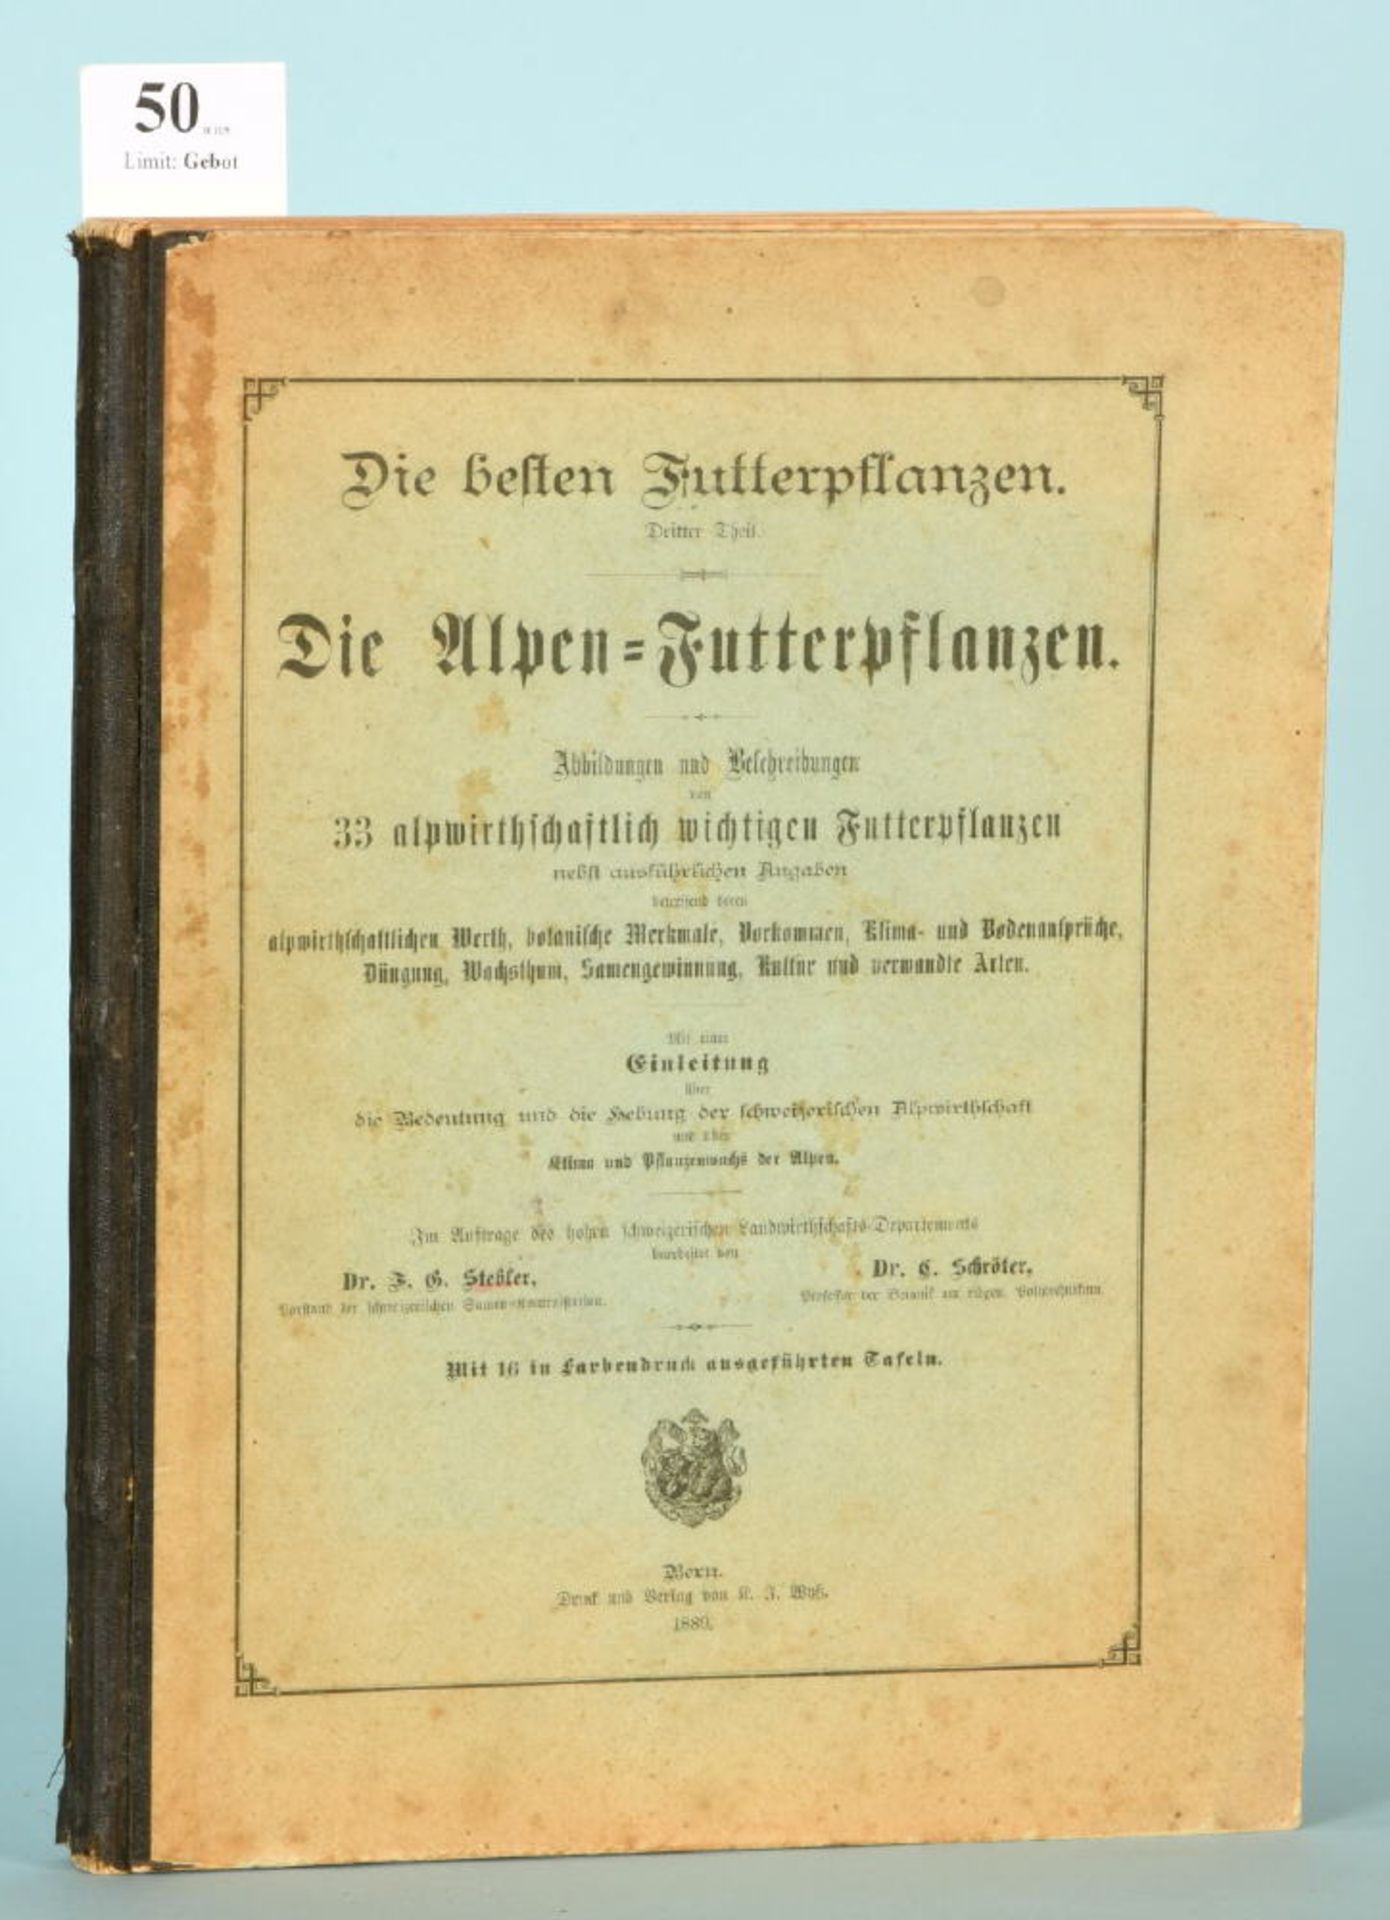 Stebler, F. u. Schröter, C. "Die Alpen-Futterpflanzen"